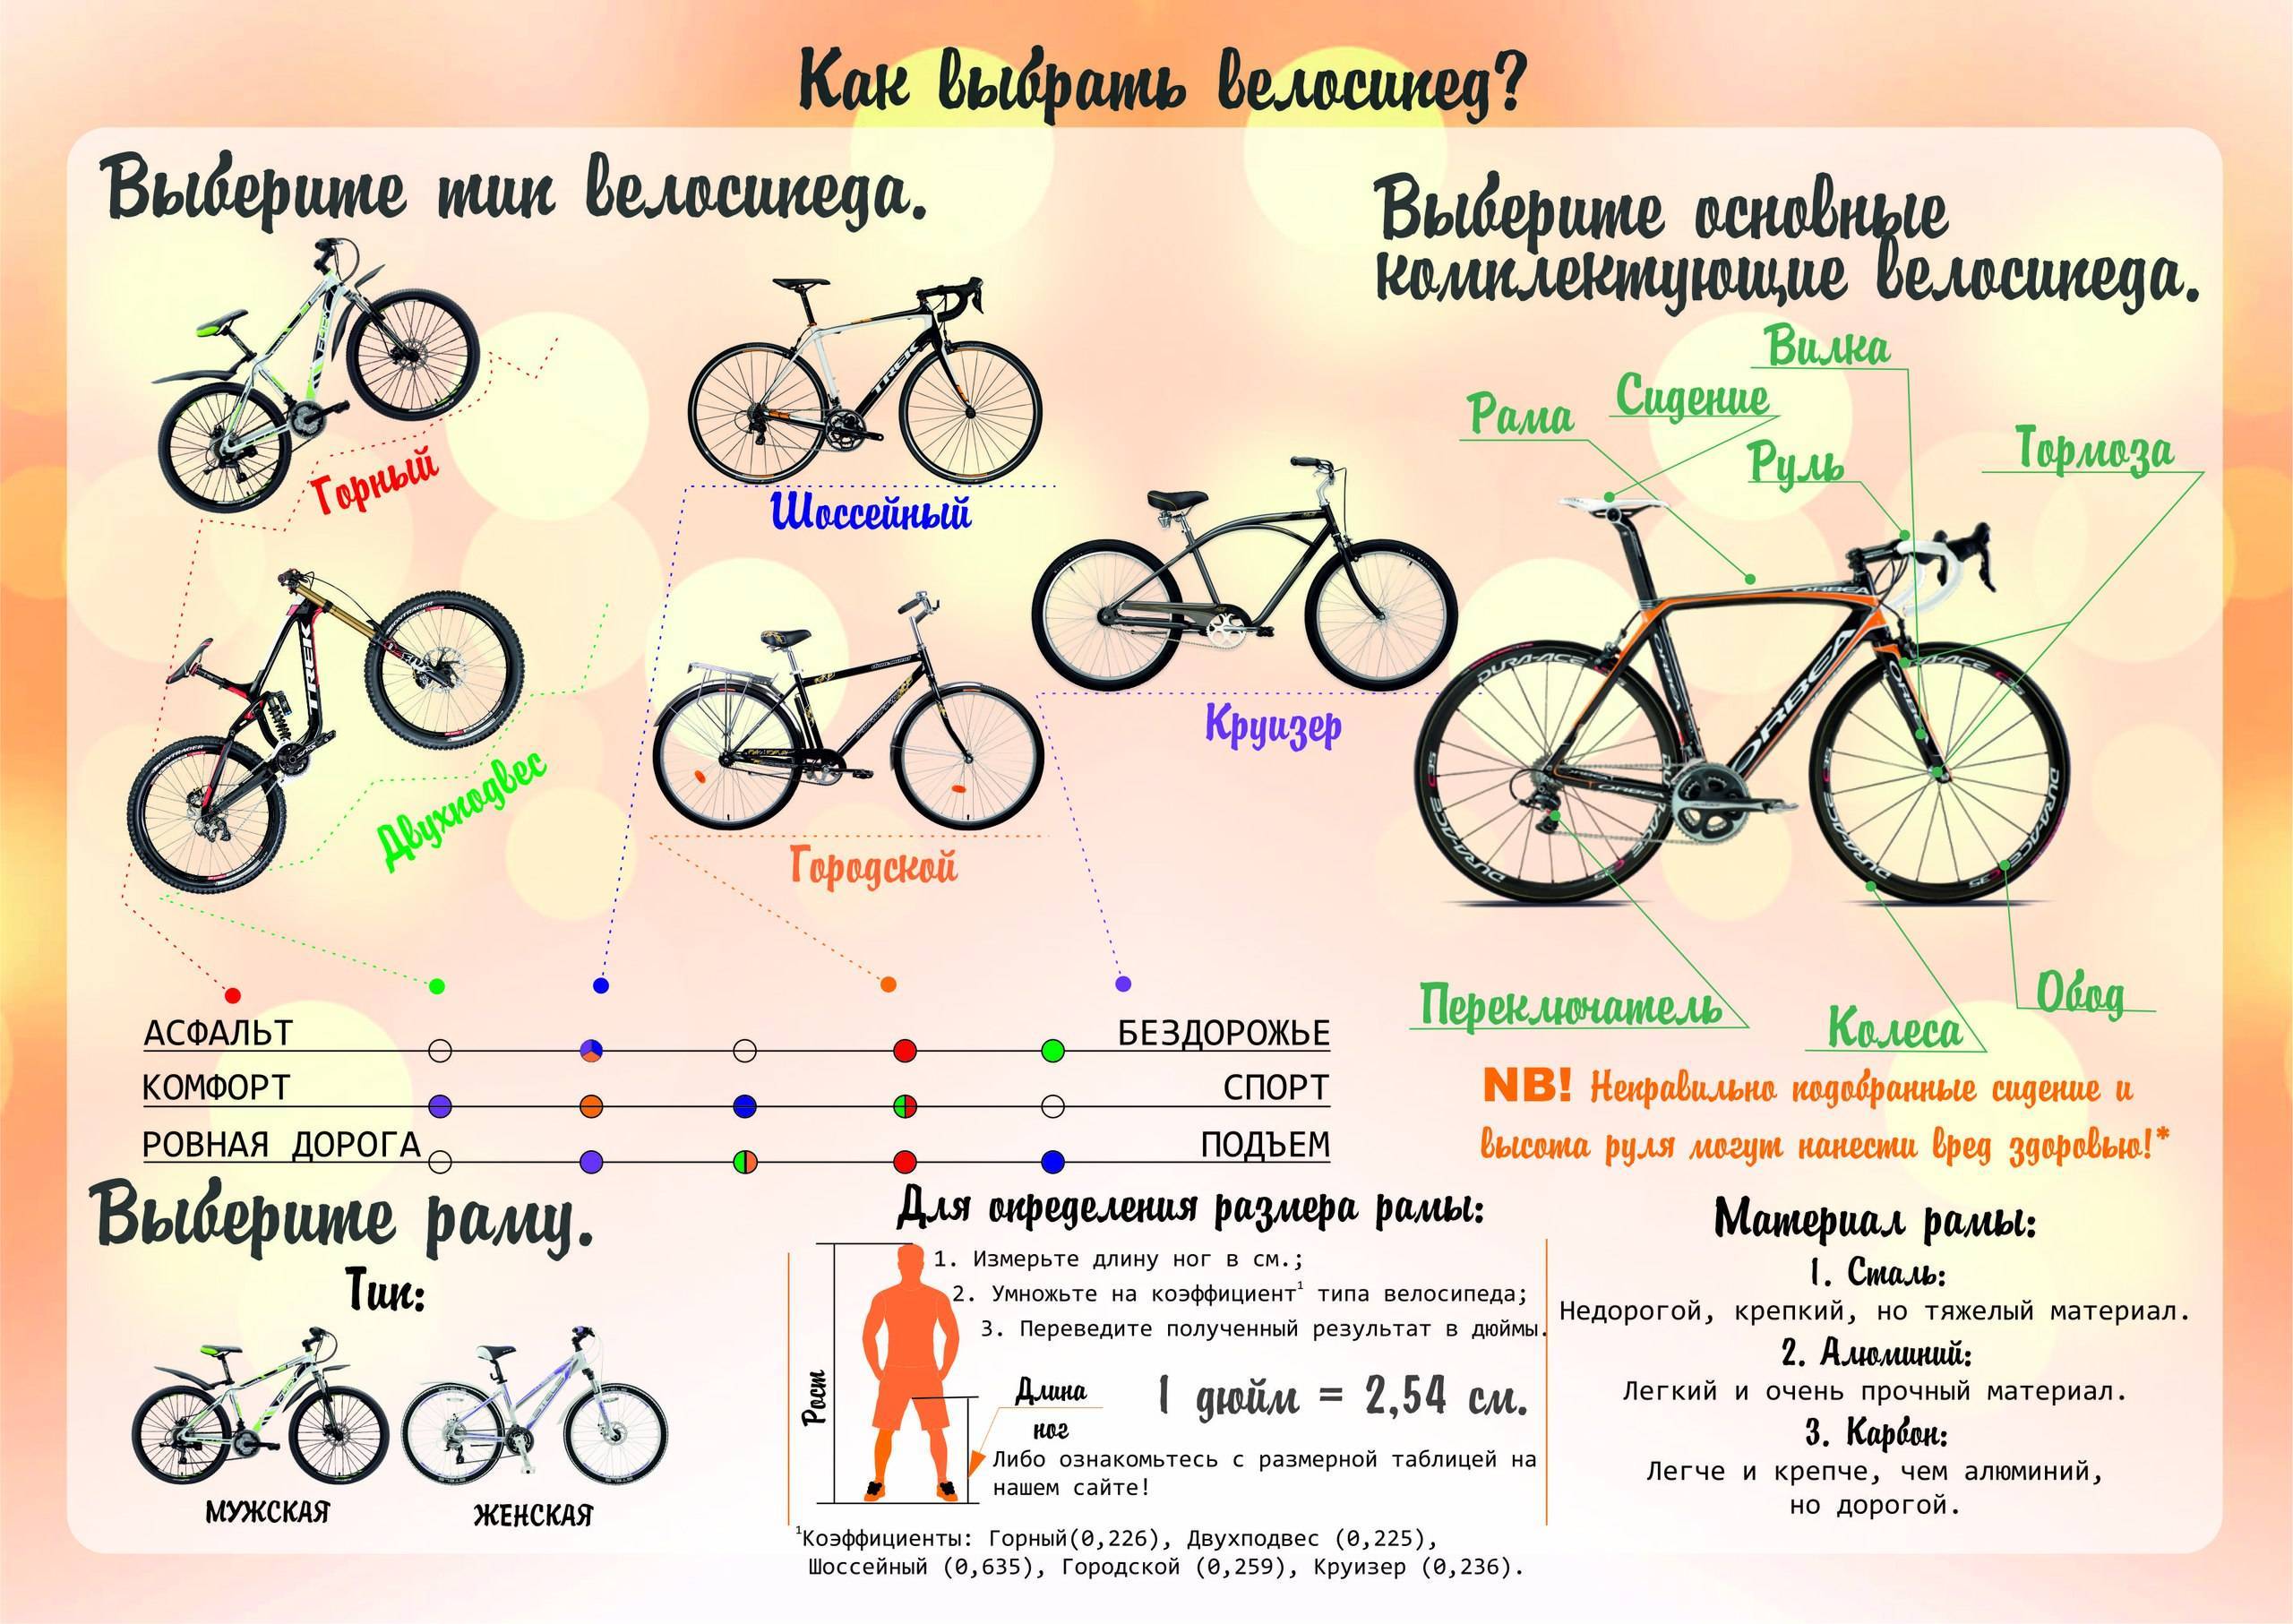 Как подобрать велосипед по росту